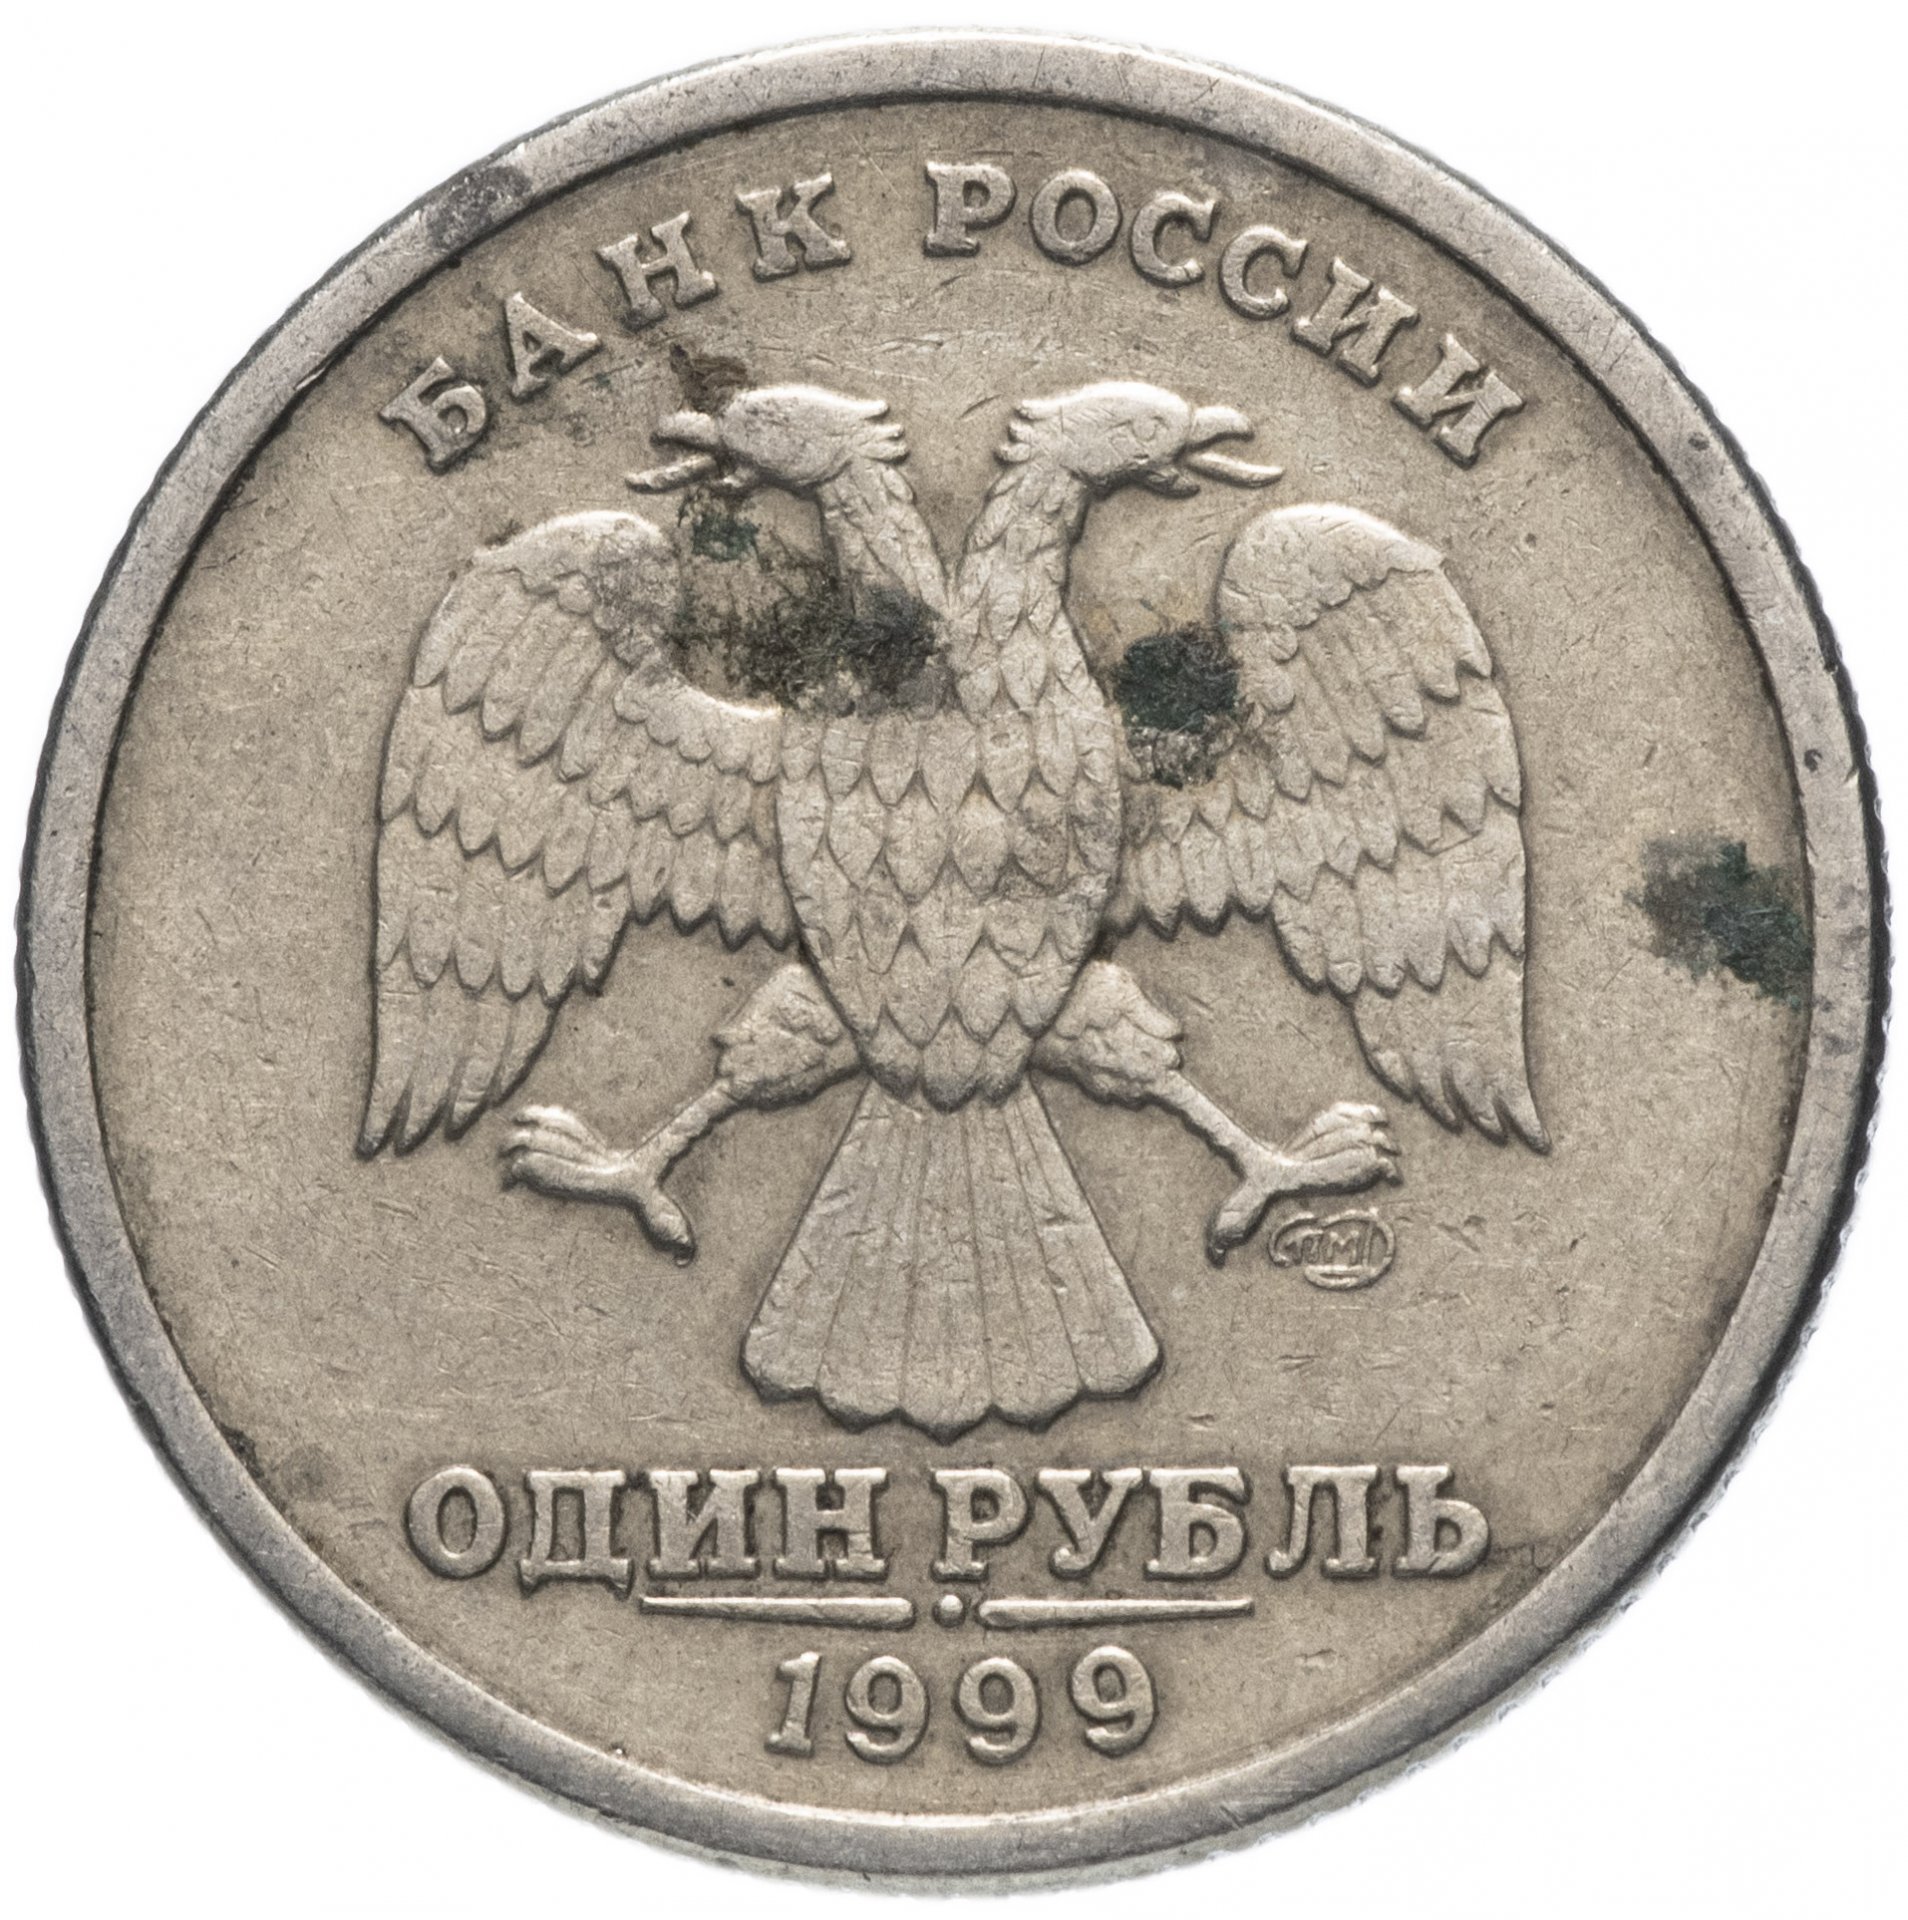 5 рублей орел. Монета 10 двуглавый Орел. Монета 1 рубль Орел. Монета рубль двуглавый Орел.